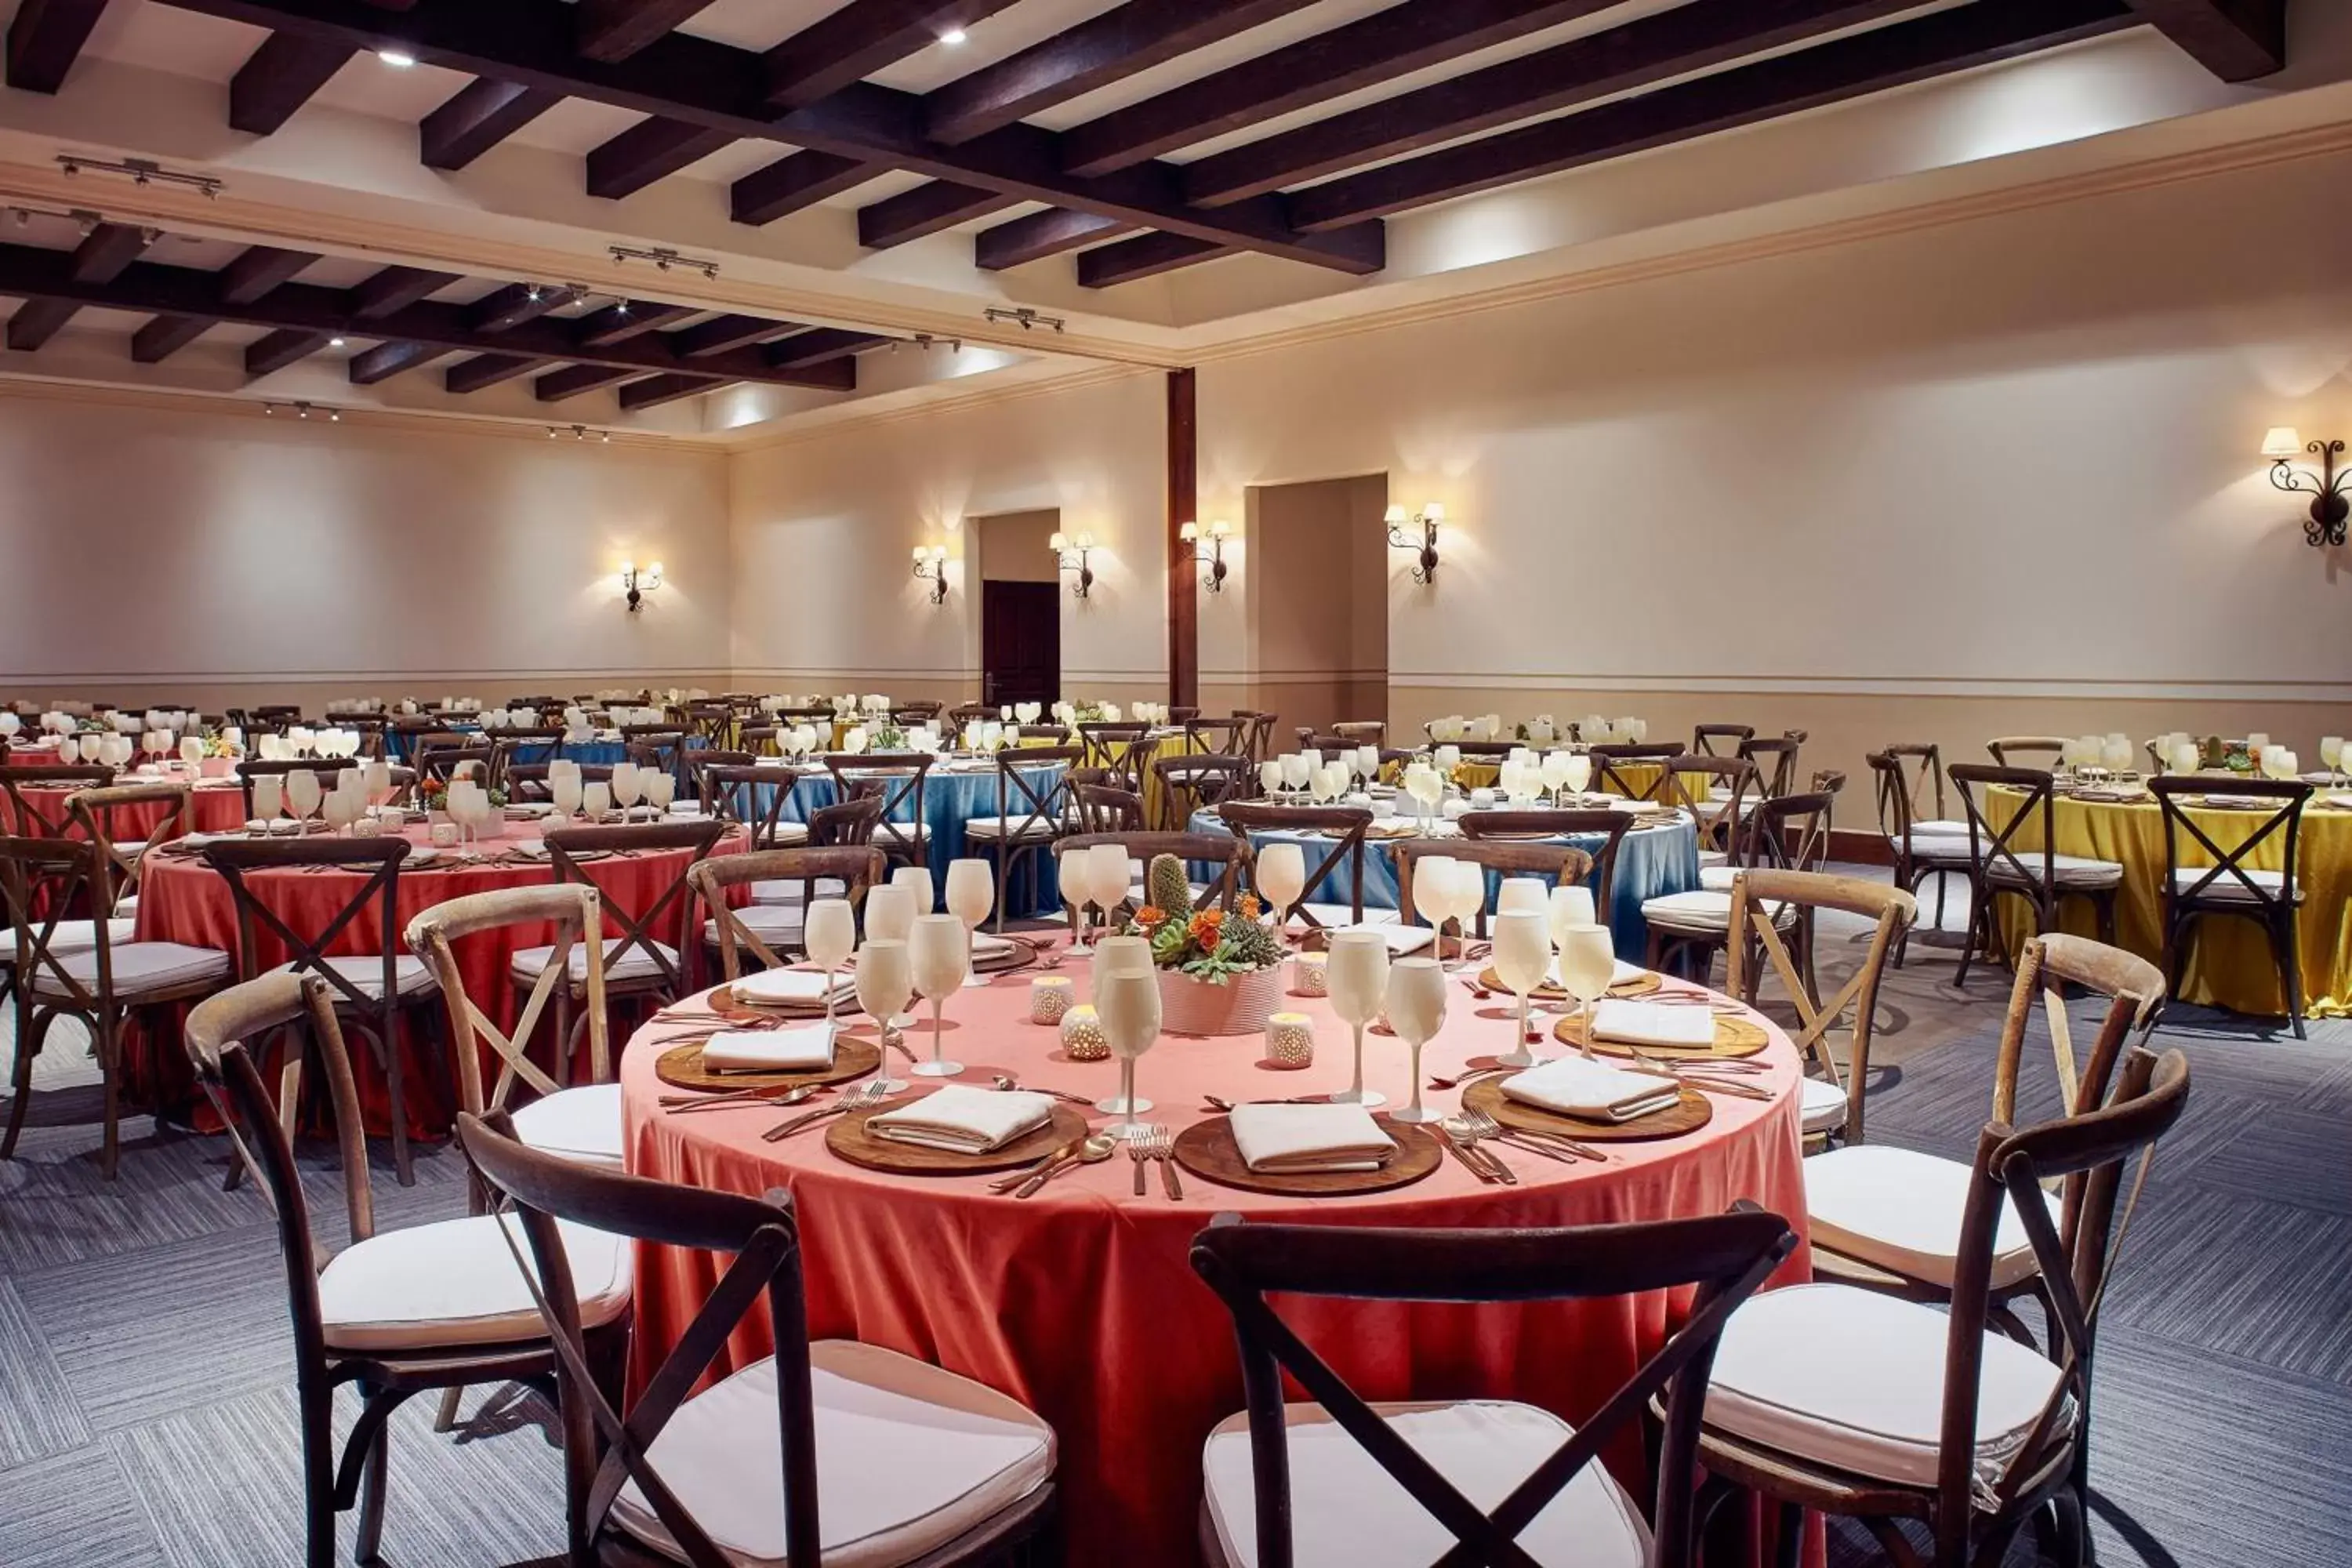 Meeting/conference room, Restaurant/Places to Eat in Hacienda del Mar Los Cabos